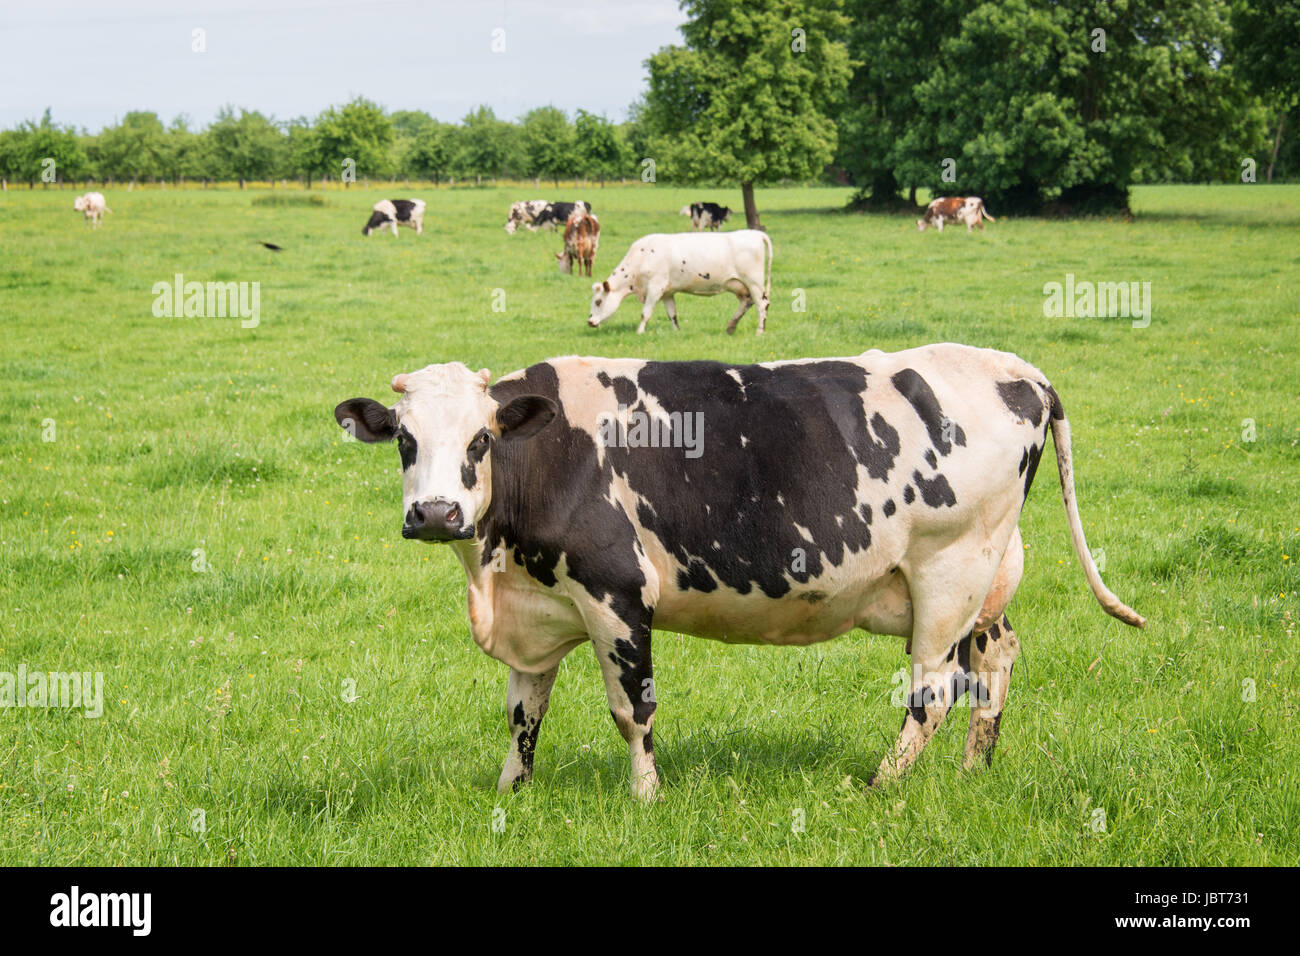 Norman schwarz / weiß Kühe weiden auf grüner Wiese mit Bäumen an einem sonnigen Tag in der Normandie, Frankreich. Sommer-Landschaft und pastu Stockfoto